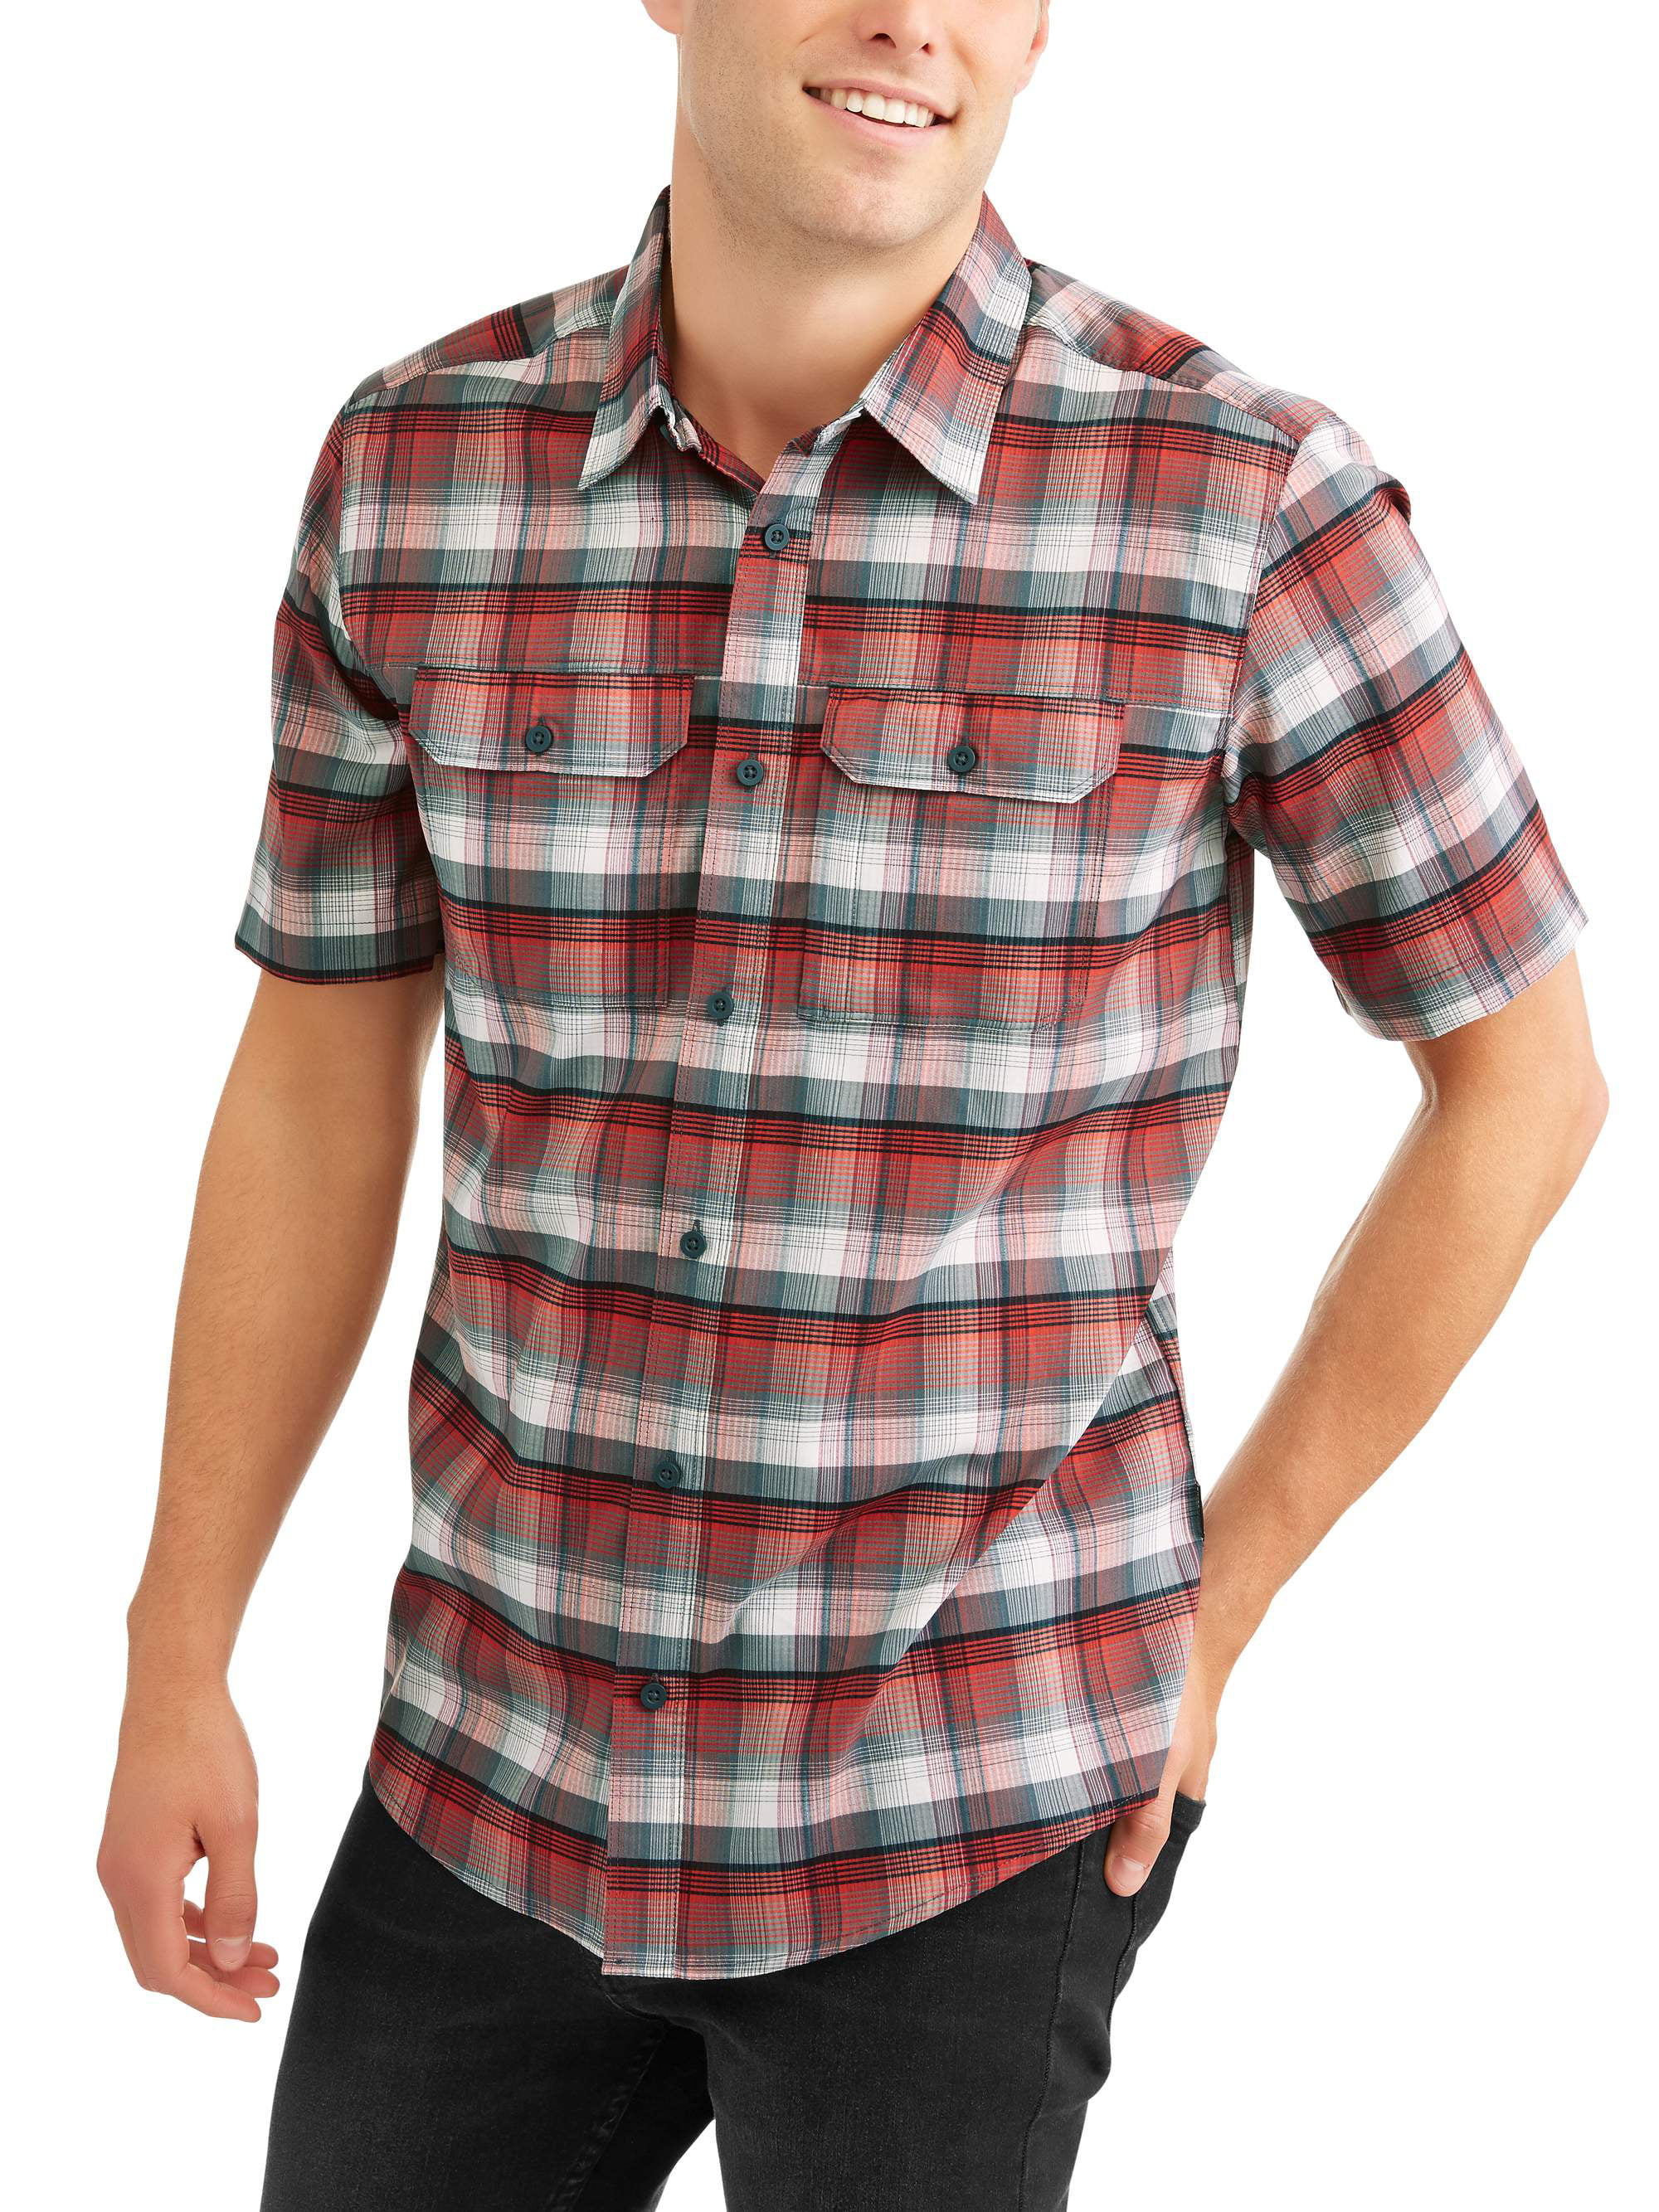 Swiss Tech Men's short sleeve outdoor woven shirt - Walmart.com